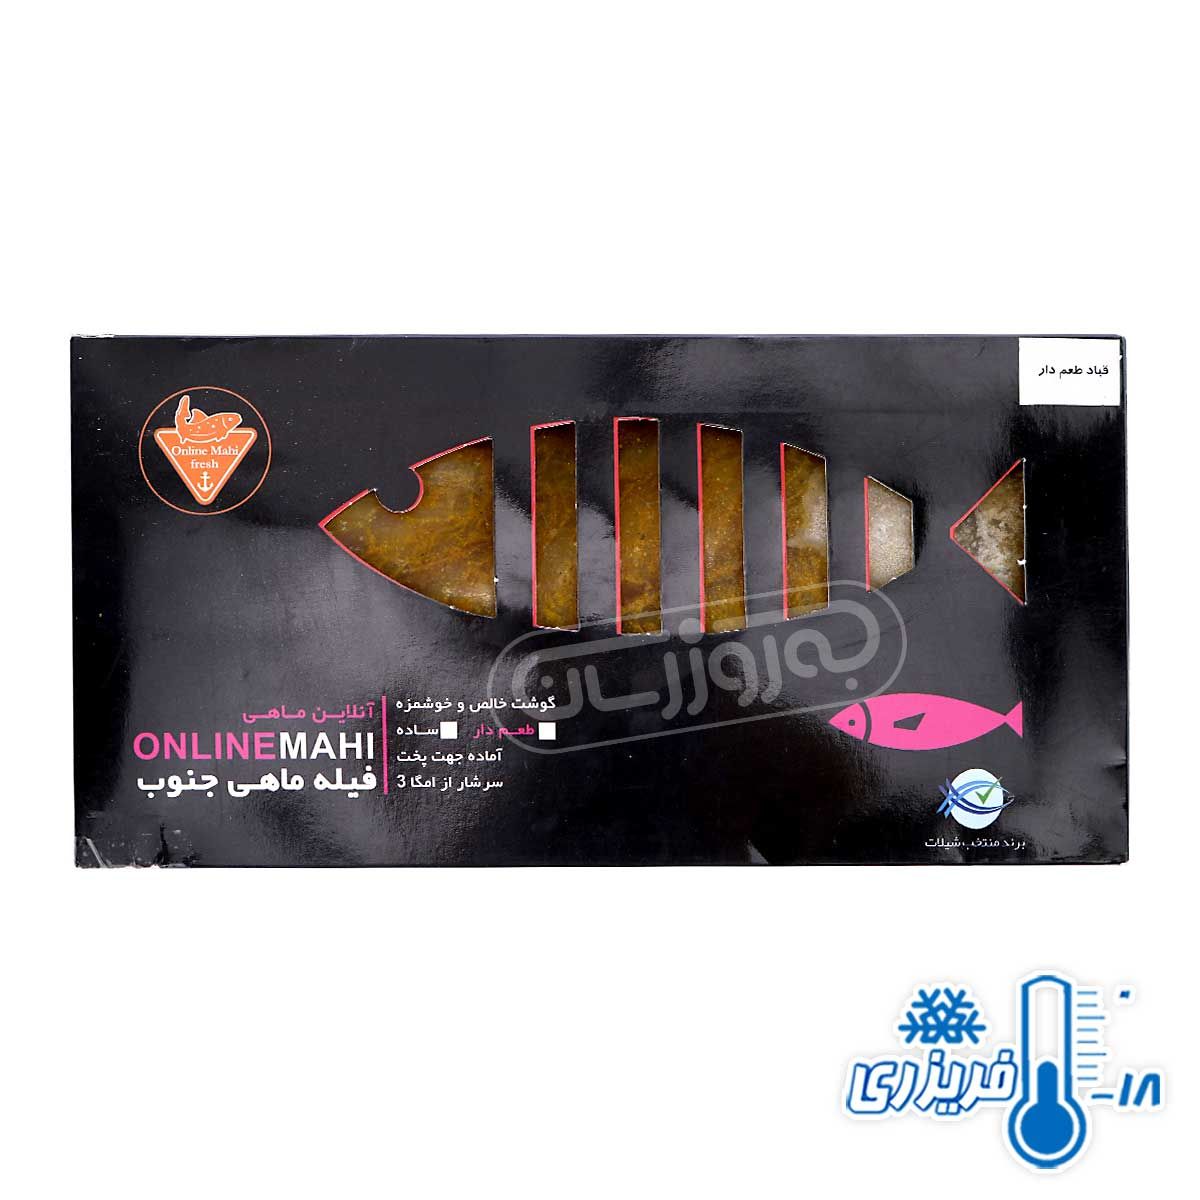 فیله ماهی قباد طعم دار ویژه منجمد آنلاین ماهی 350 گرمی